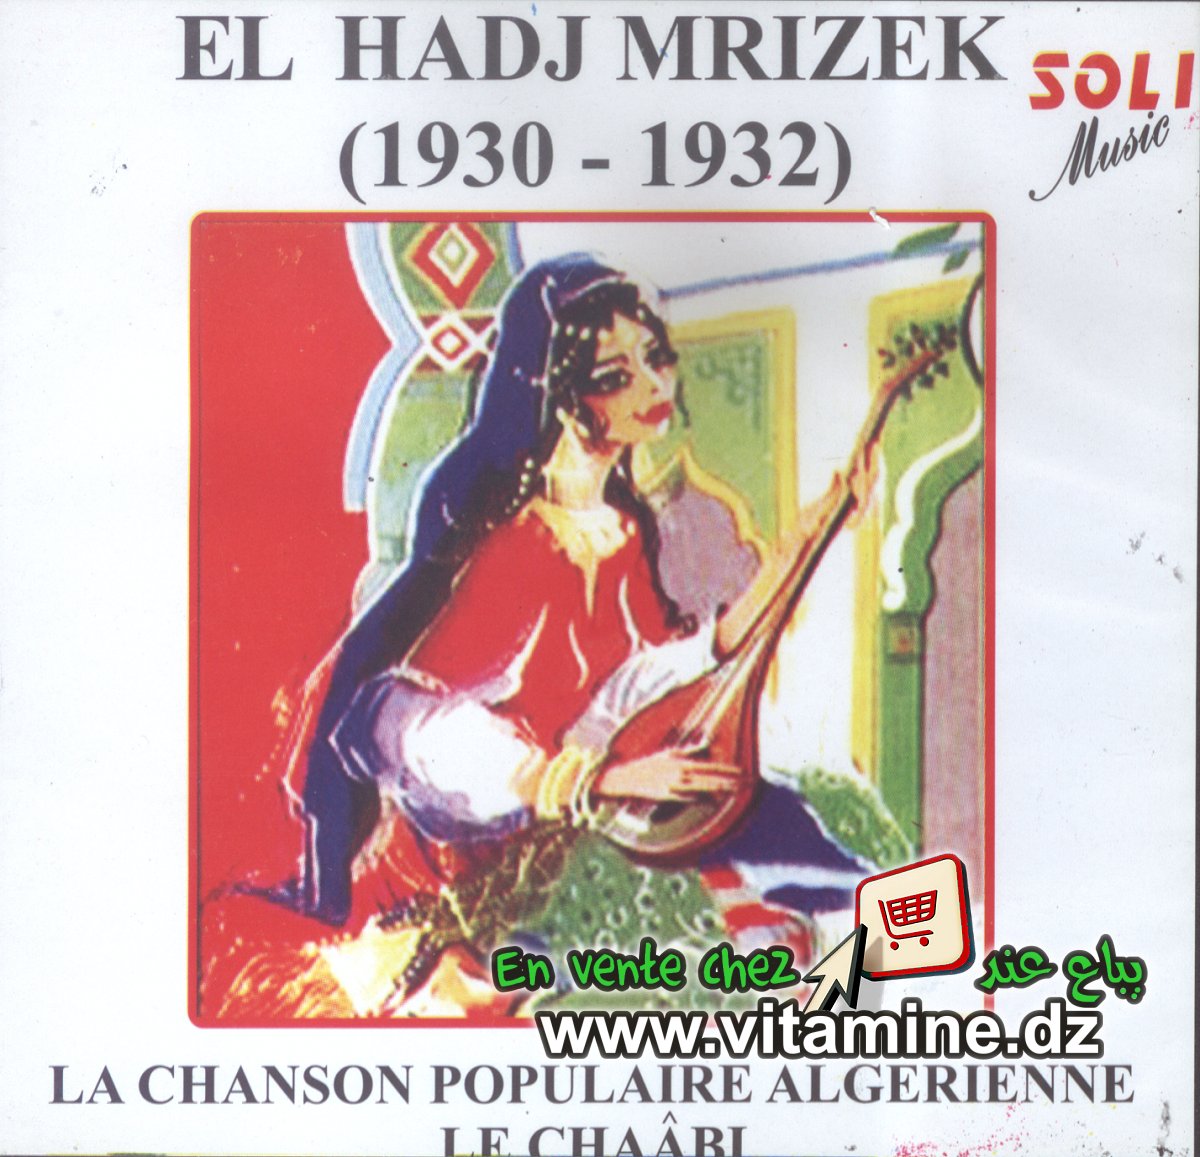 El Hadj Mrizek 1930 - 1932